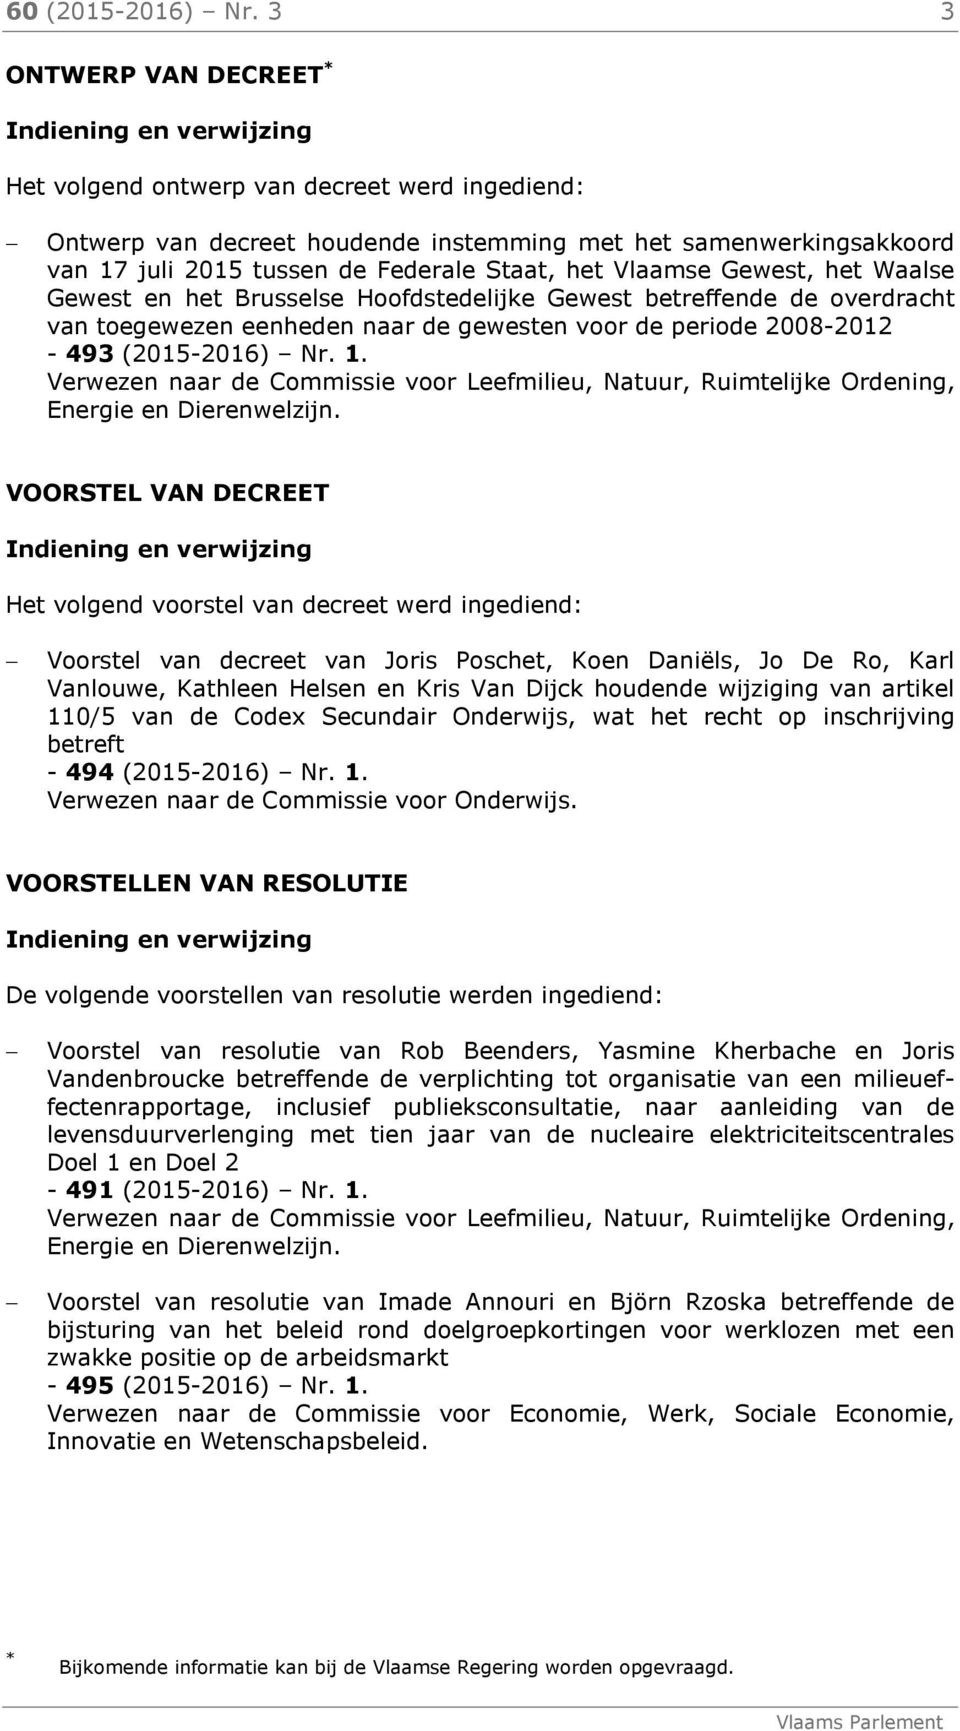 Federale Staat, het Vlaamse Gewest, het Waalse Gewest en het Brusselse Hoofdstedelijke Gewest betreffende de overdracht van toegewezen eenheden naar de gewesten voor de periode 2008-2012 - 493